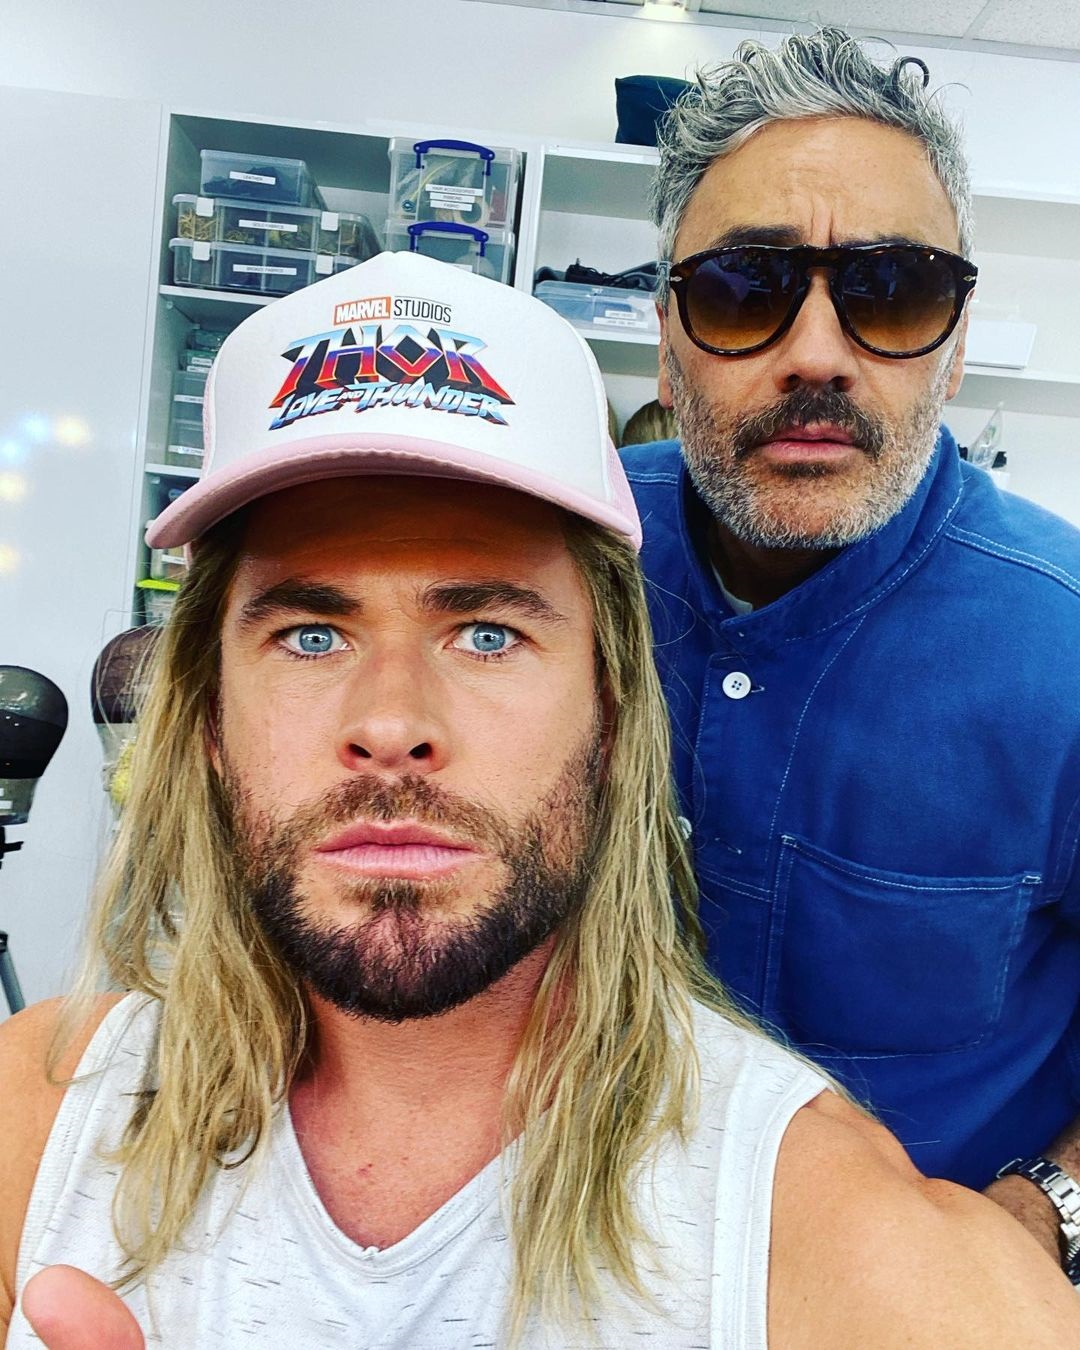 Thor: Amor e Trovão  Chris Hemsworth revela que filmagens devem